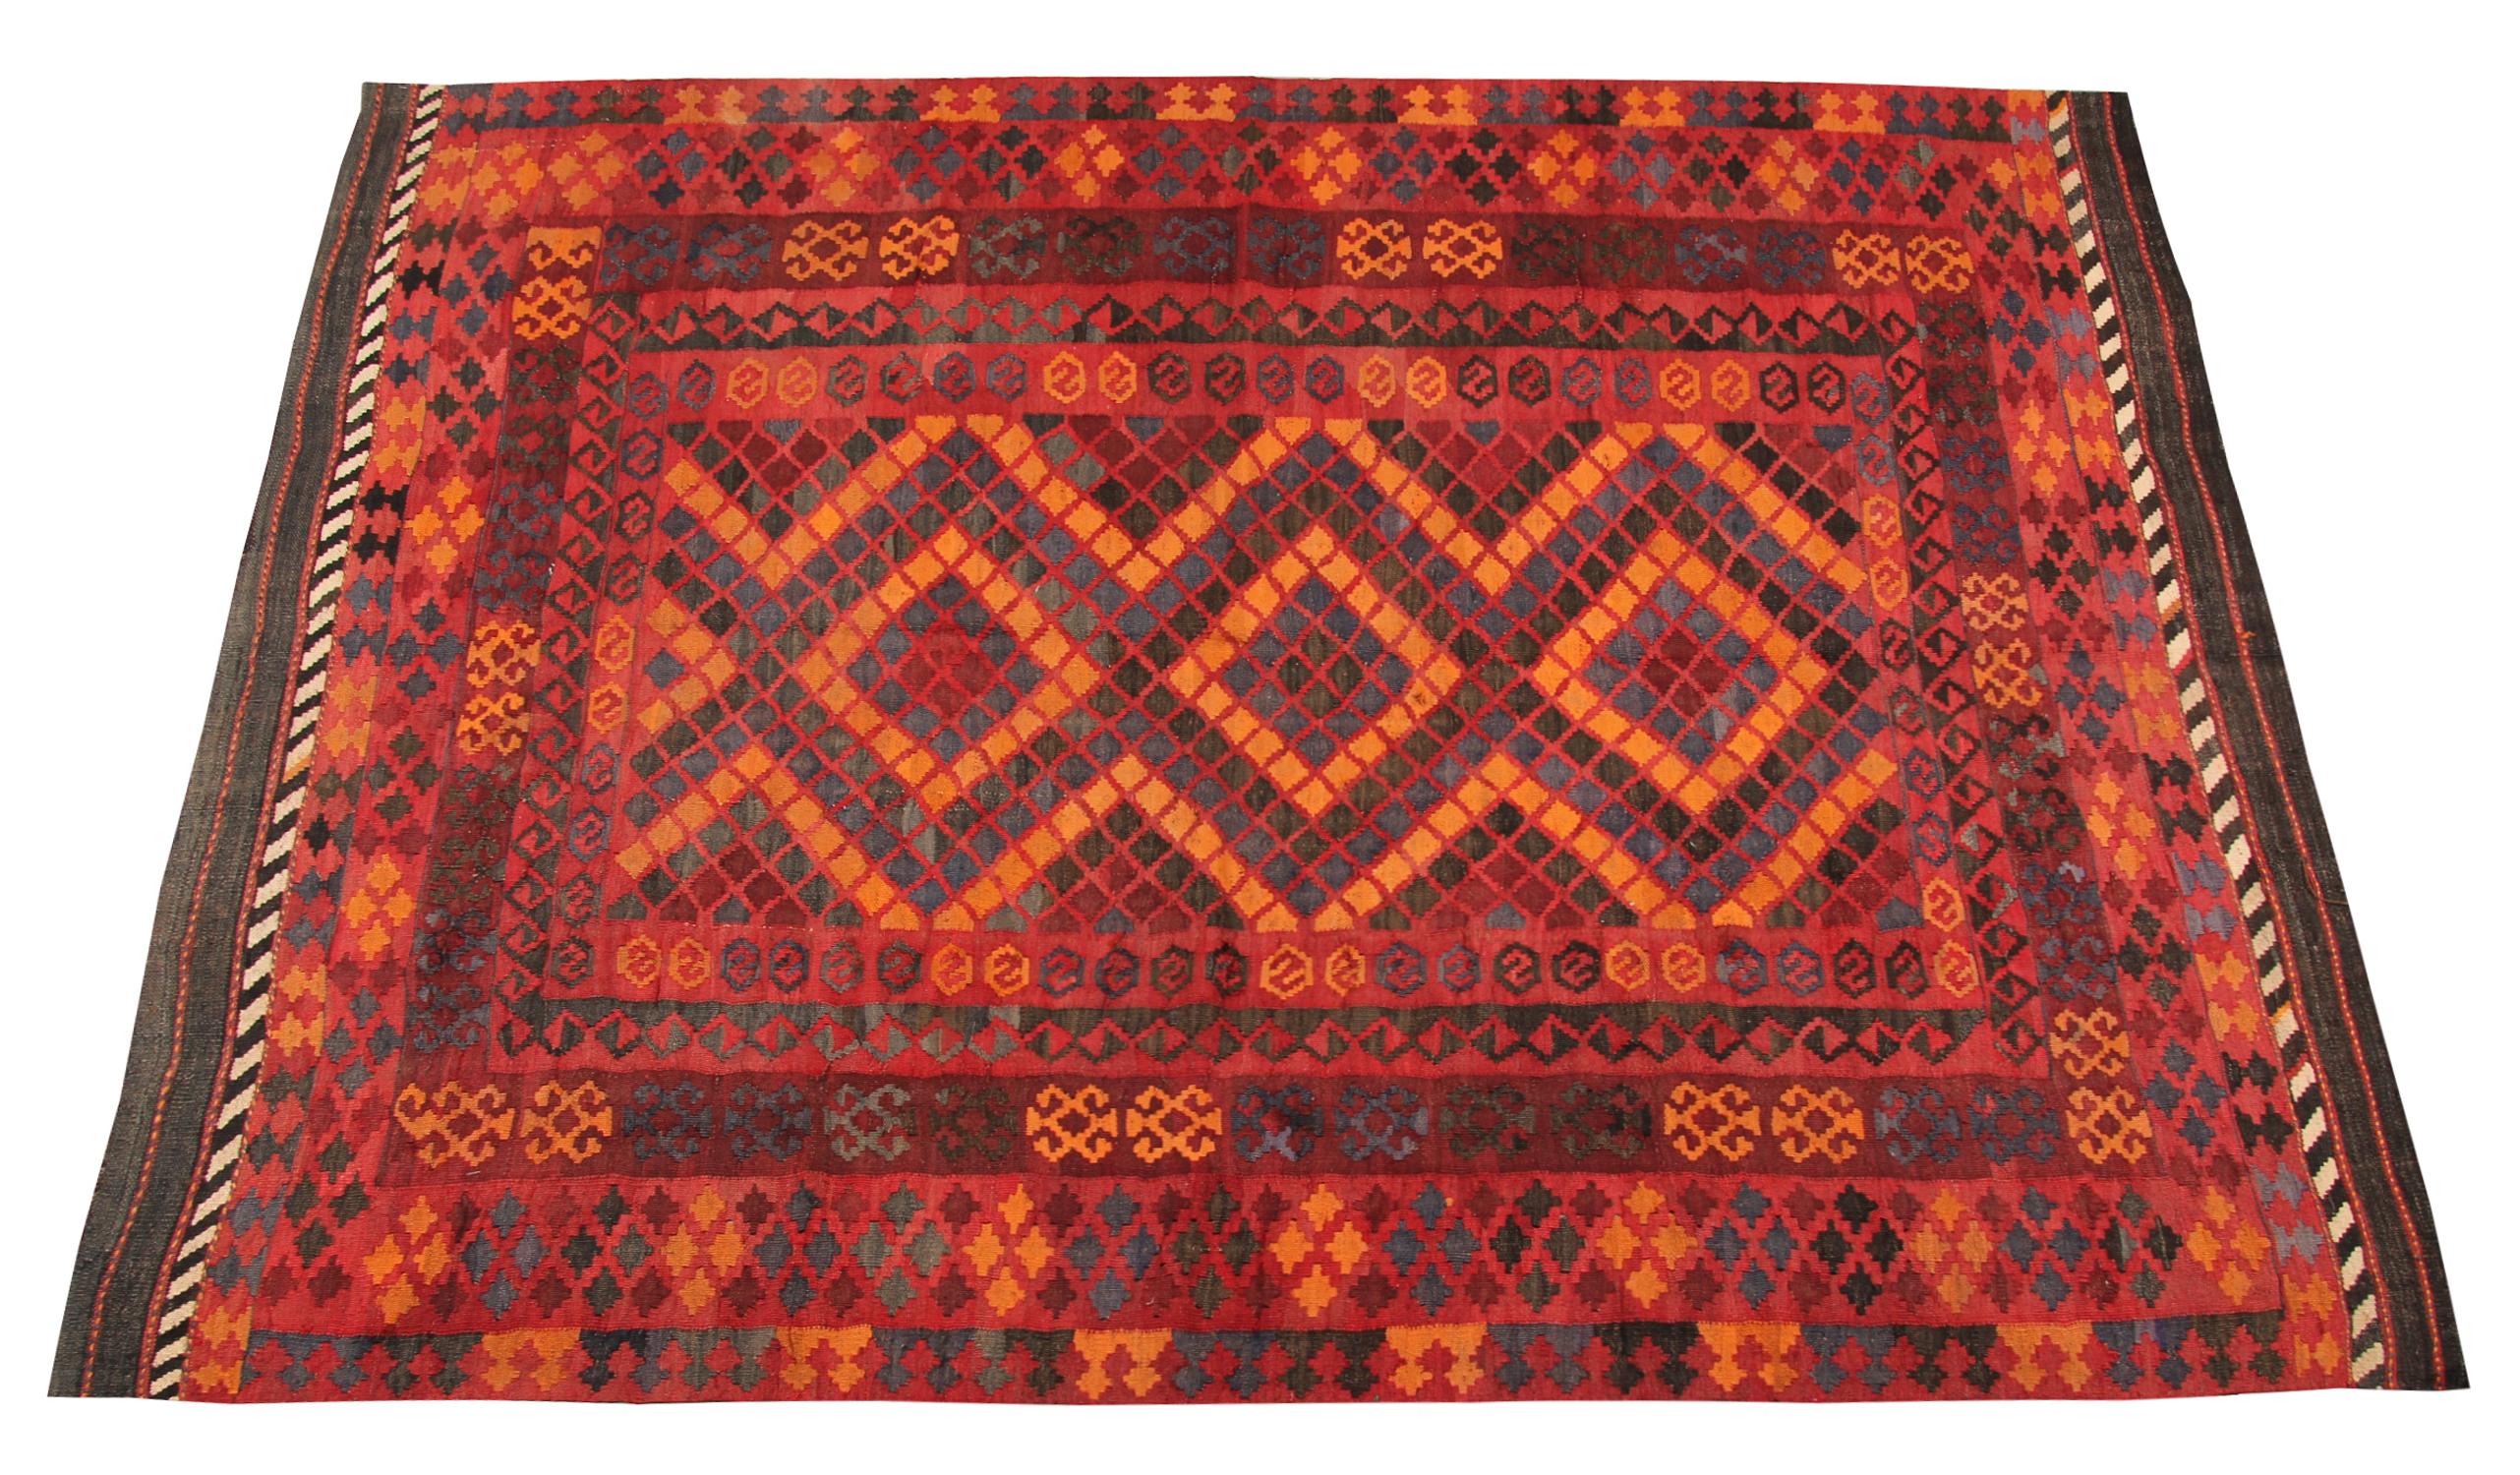 Dieser orange-rote Teppich ist ein türkischer Teppich, der von sehr geschickten Knüpfern in der Türkei gewebt wurde, die Wolle und Baumwolle von höchster Qualität verwendeten. Der flachgewebte Teppich hat dunkel- und hellrote, blaue und dunkelbraune